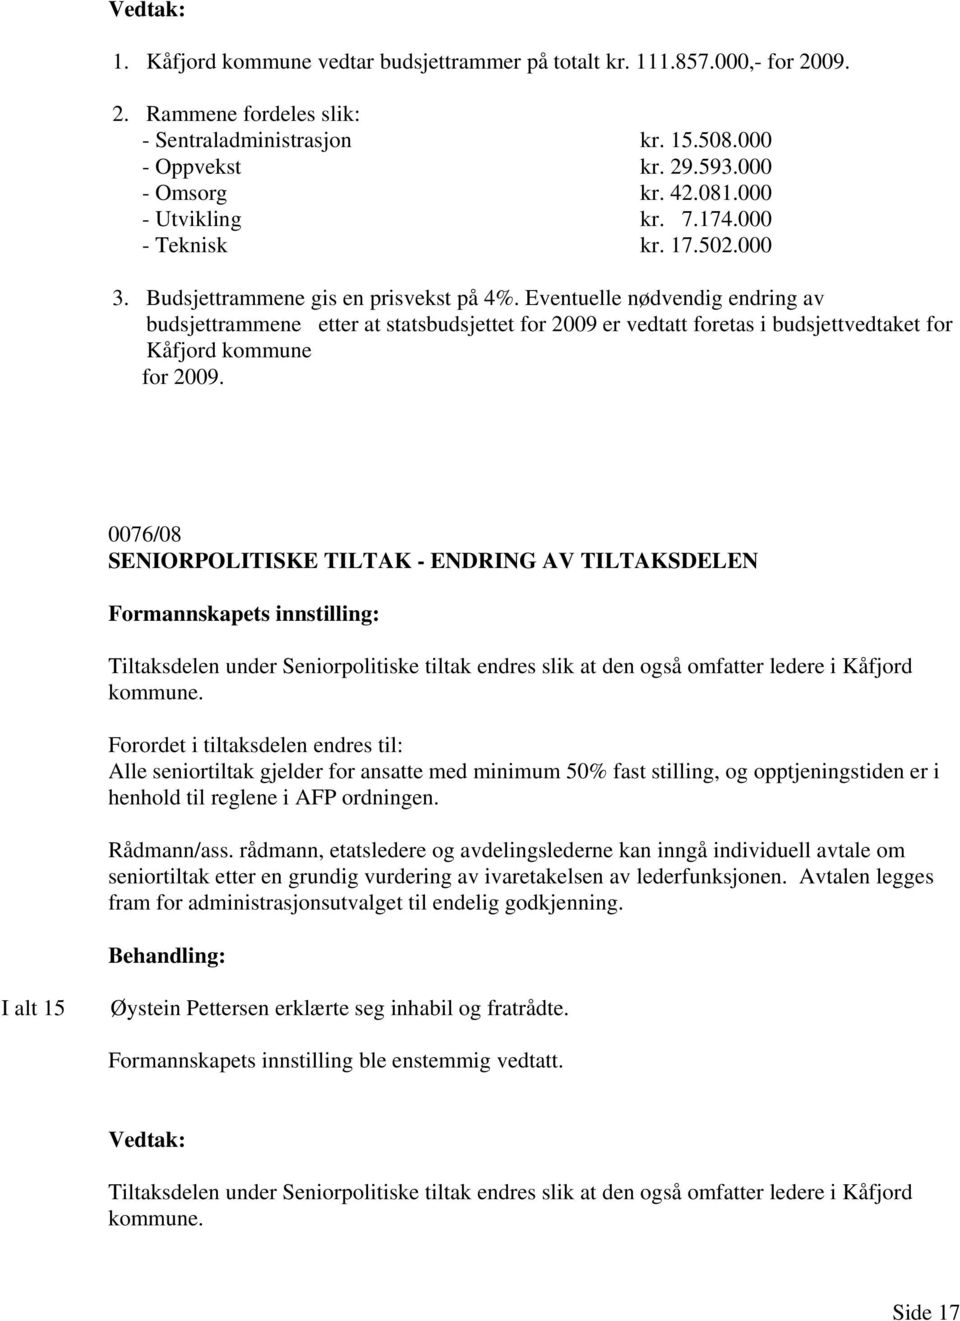 Eventuelle nødvendig endring av budsjettrammene etter at statsbudsjettet for 2009 er vedtatt foretas i budsjettvedtaket for Kåfjord kommune for 2009.